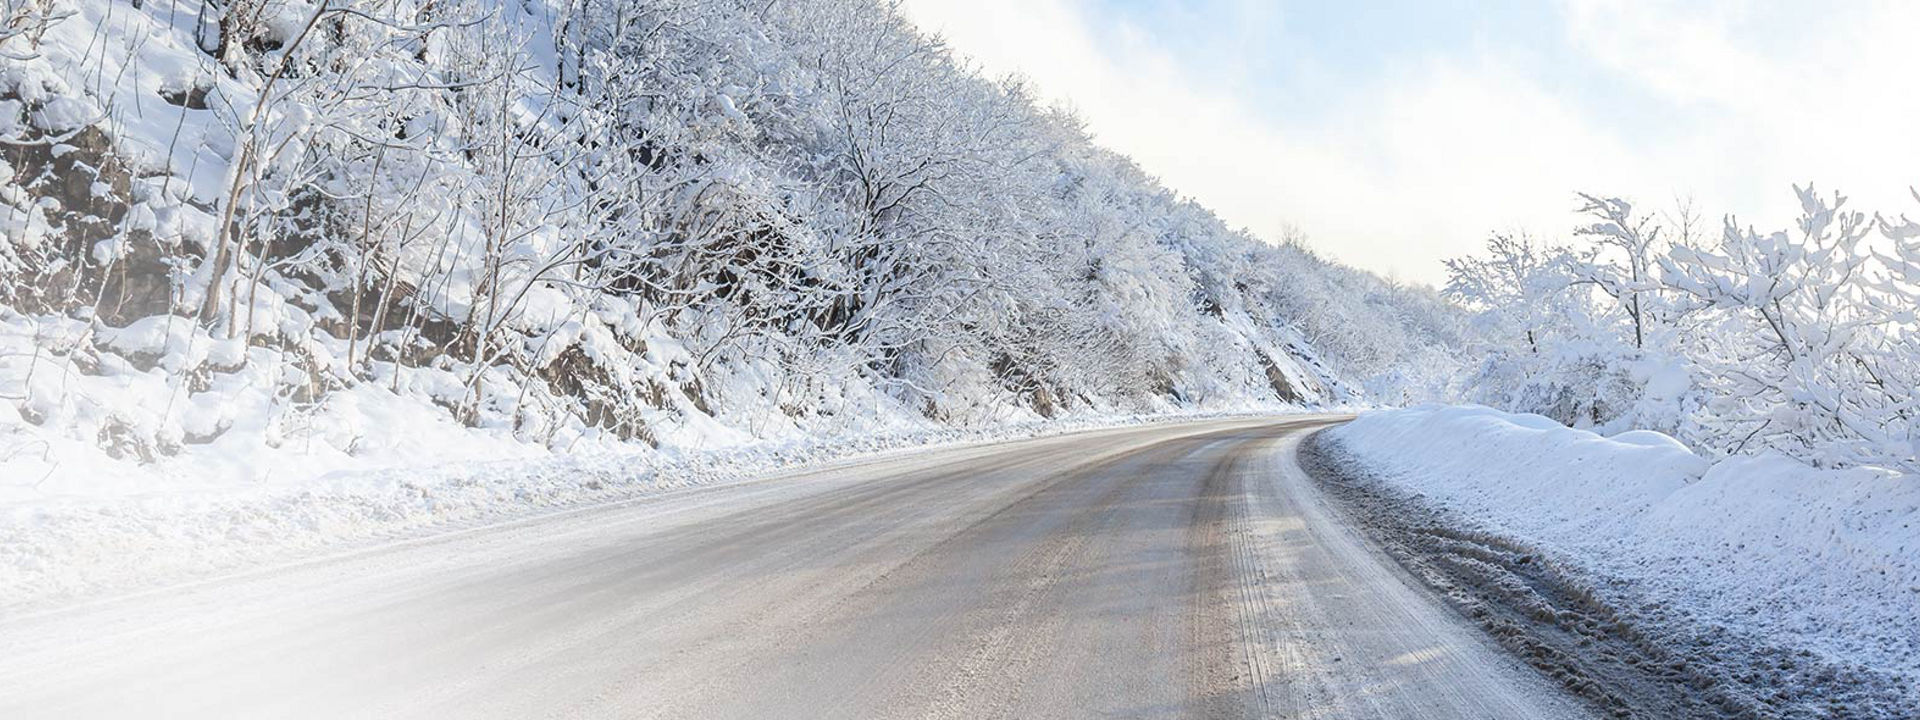 Kuvassa on luminen maantie, jossa näkyy Bridgestonen kuorma-autojen talvirenkaiden jättämät jäljet.